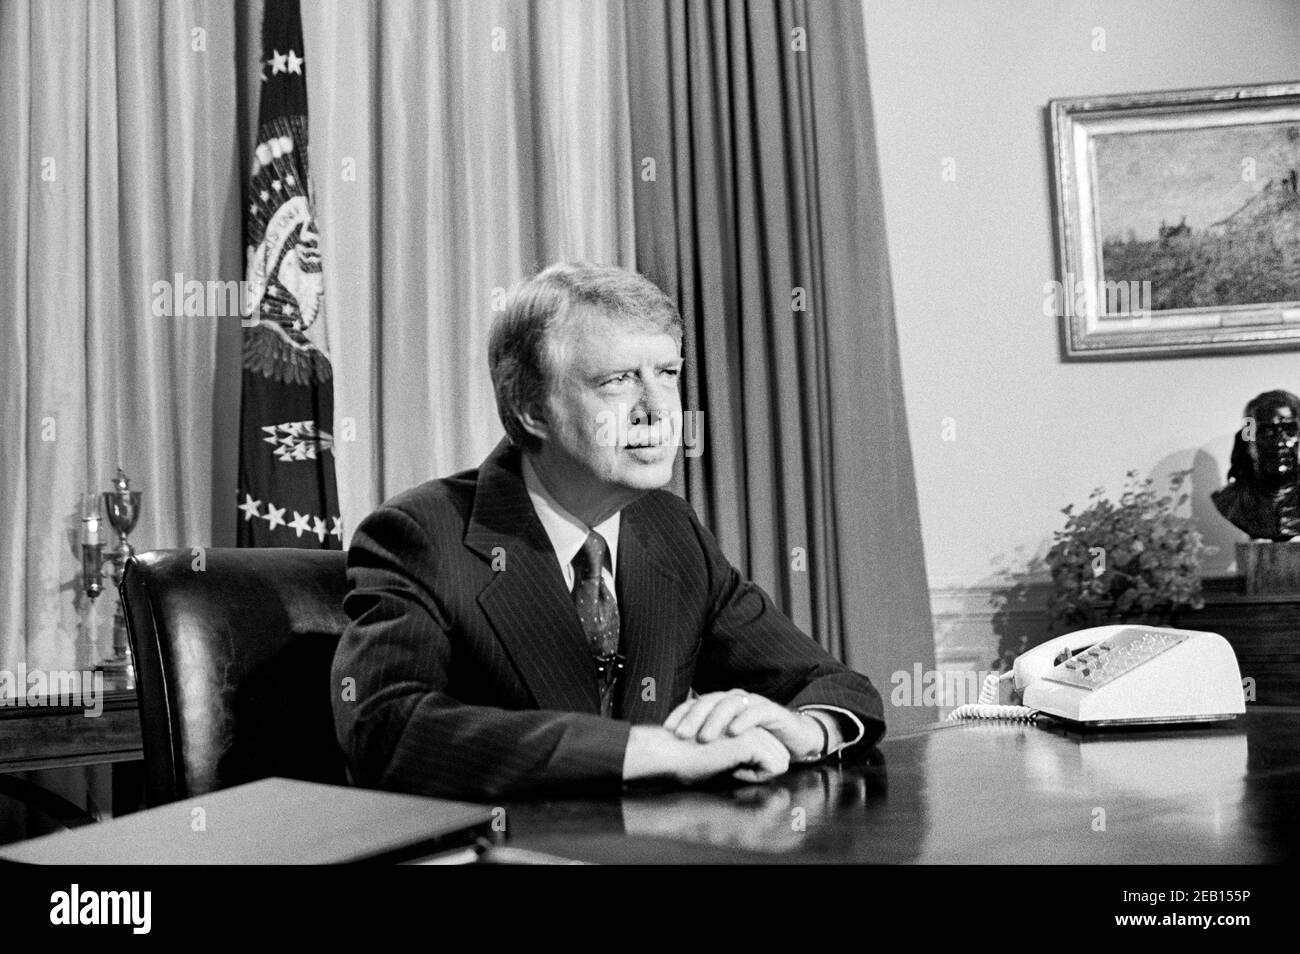 El presidente estadounidense Jimmy Carter en Oval Office durante el discurso televisivo, Casa Blanca, Washington, D.C., EE.UU., Warren K. Leffler, 18 de abril de 1977 Foto de stock